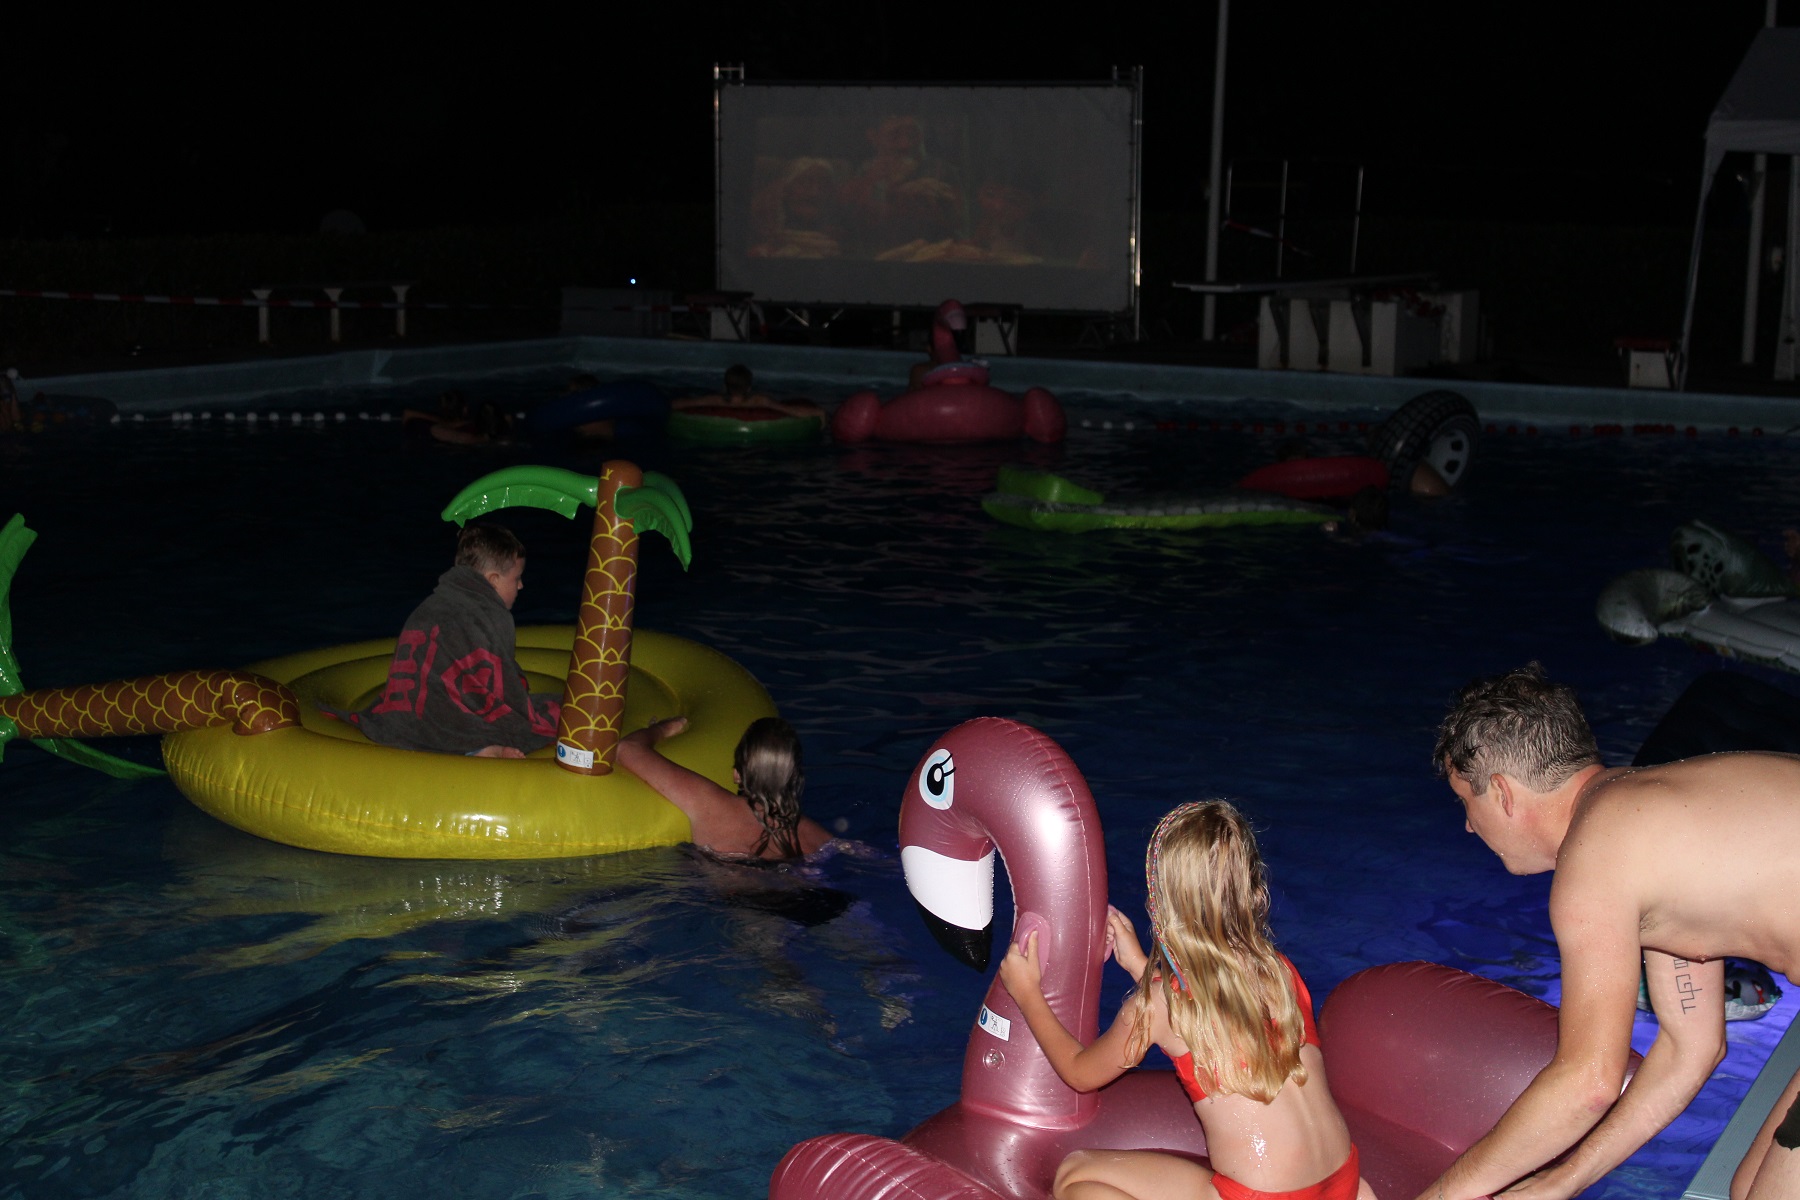 Relativiteitstheorie Niet genoeg Respectievelijk Drijf in movie night in zwembad - Hasselt Actueel